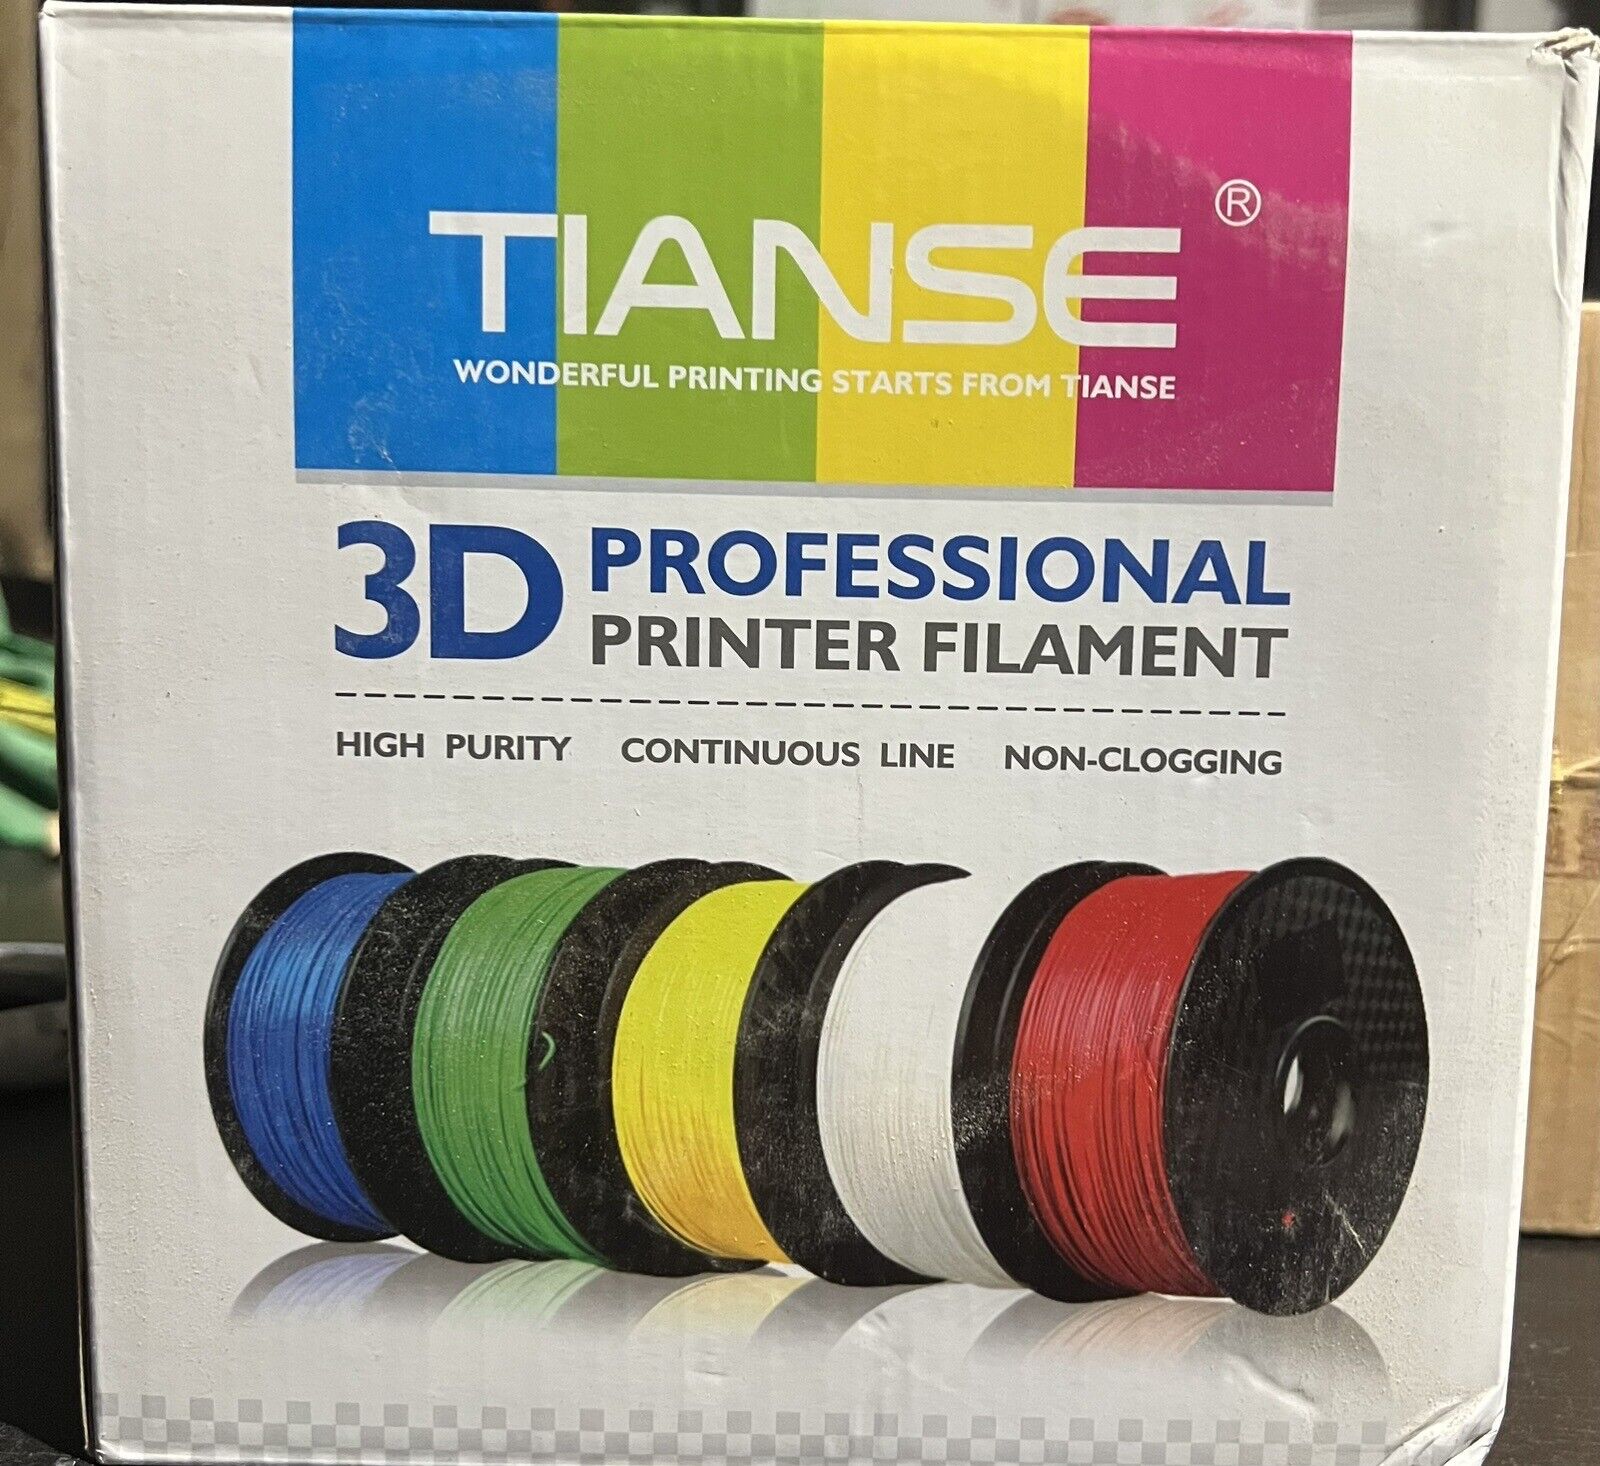 TIANSE 3D Printer Filament Violet, 1.75mm 1KG Spool (2.2lbs)